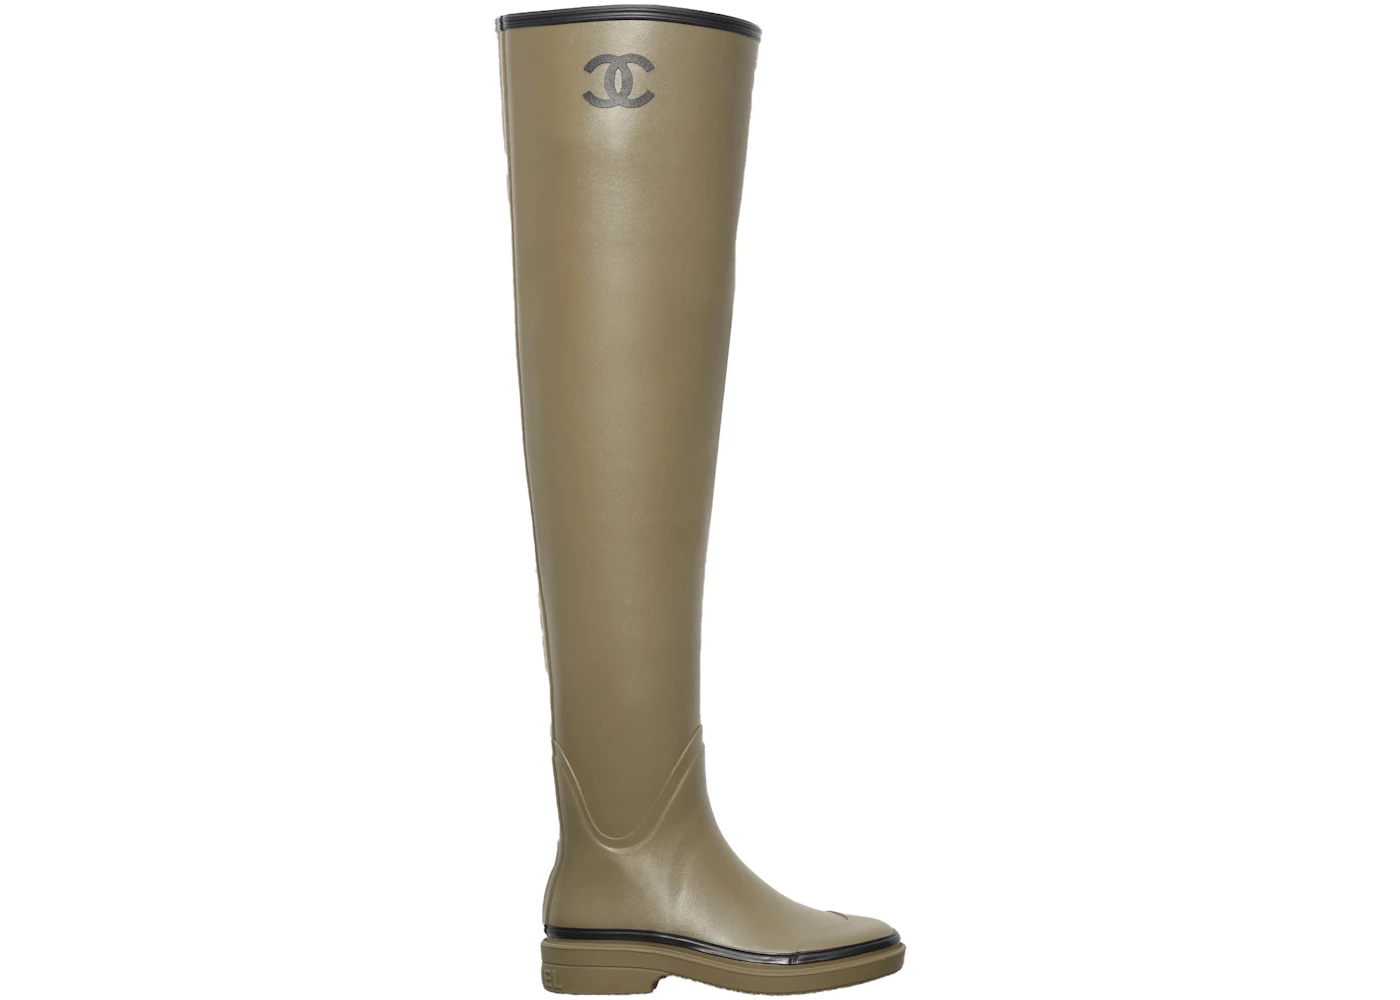 Chanel Thigh High Rubber Rain Boots Dark Beige - G39625 X56326